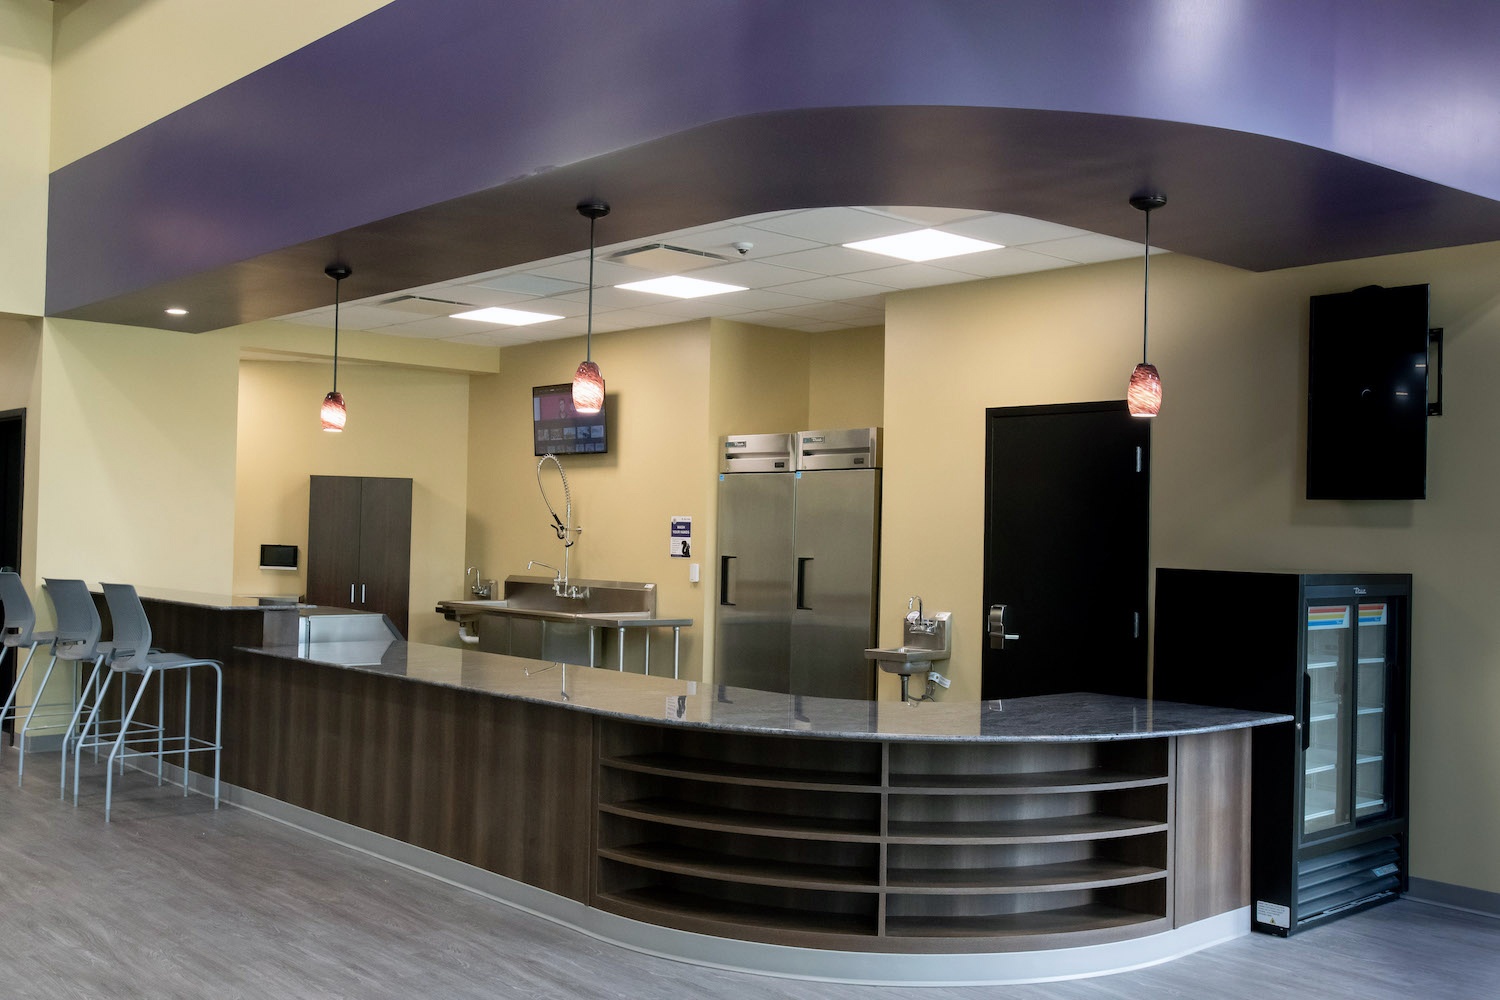 The smoothie bar inside the wellness center